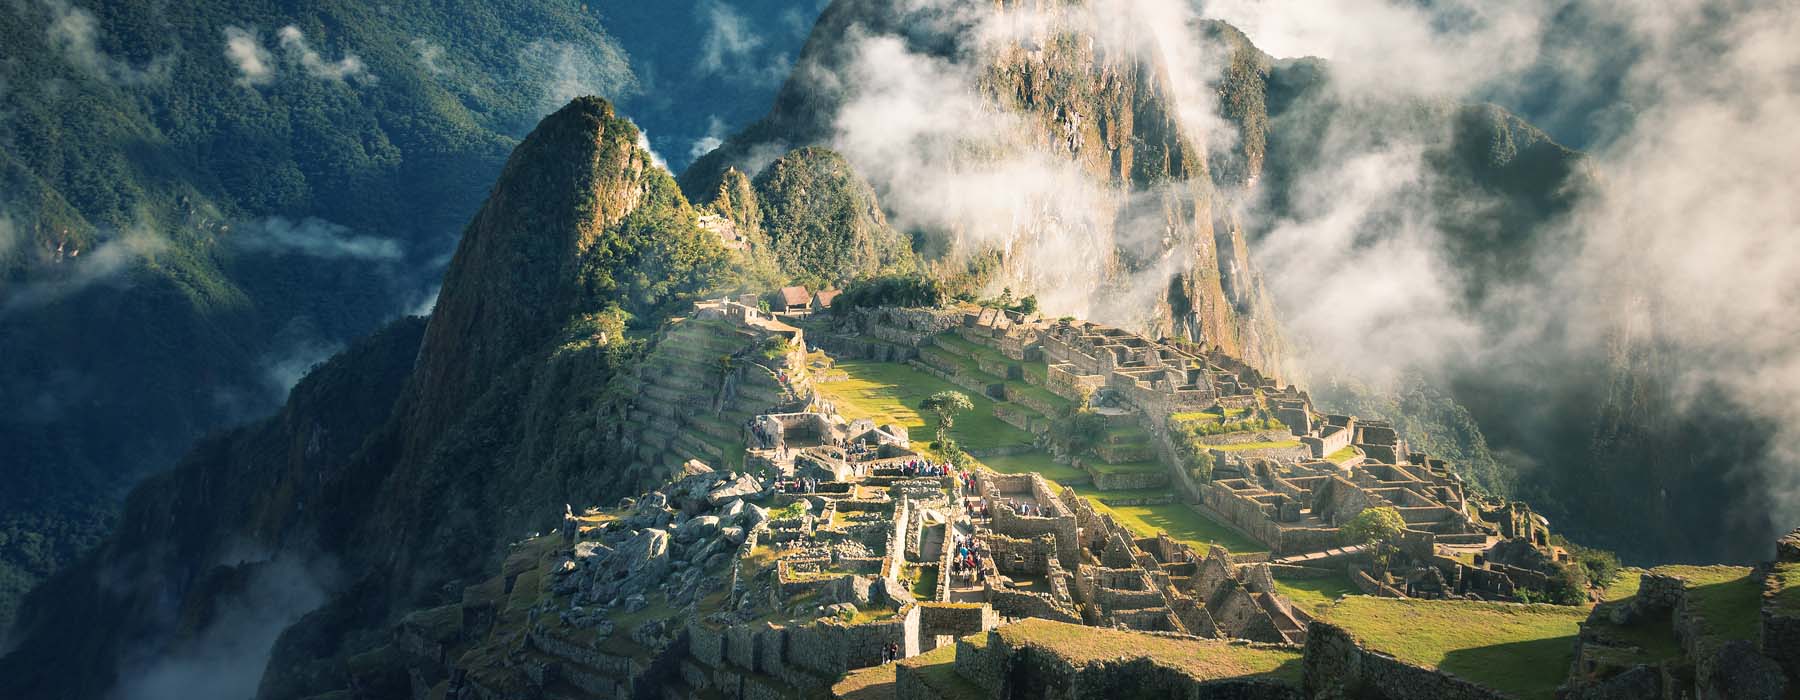 Peru<br class="hidden-md hidden-lg" /> Cultural Holidays